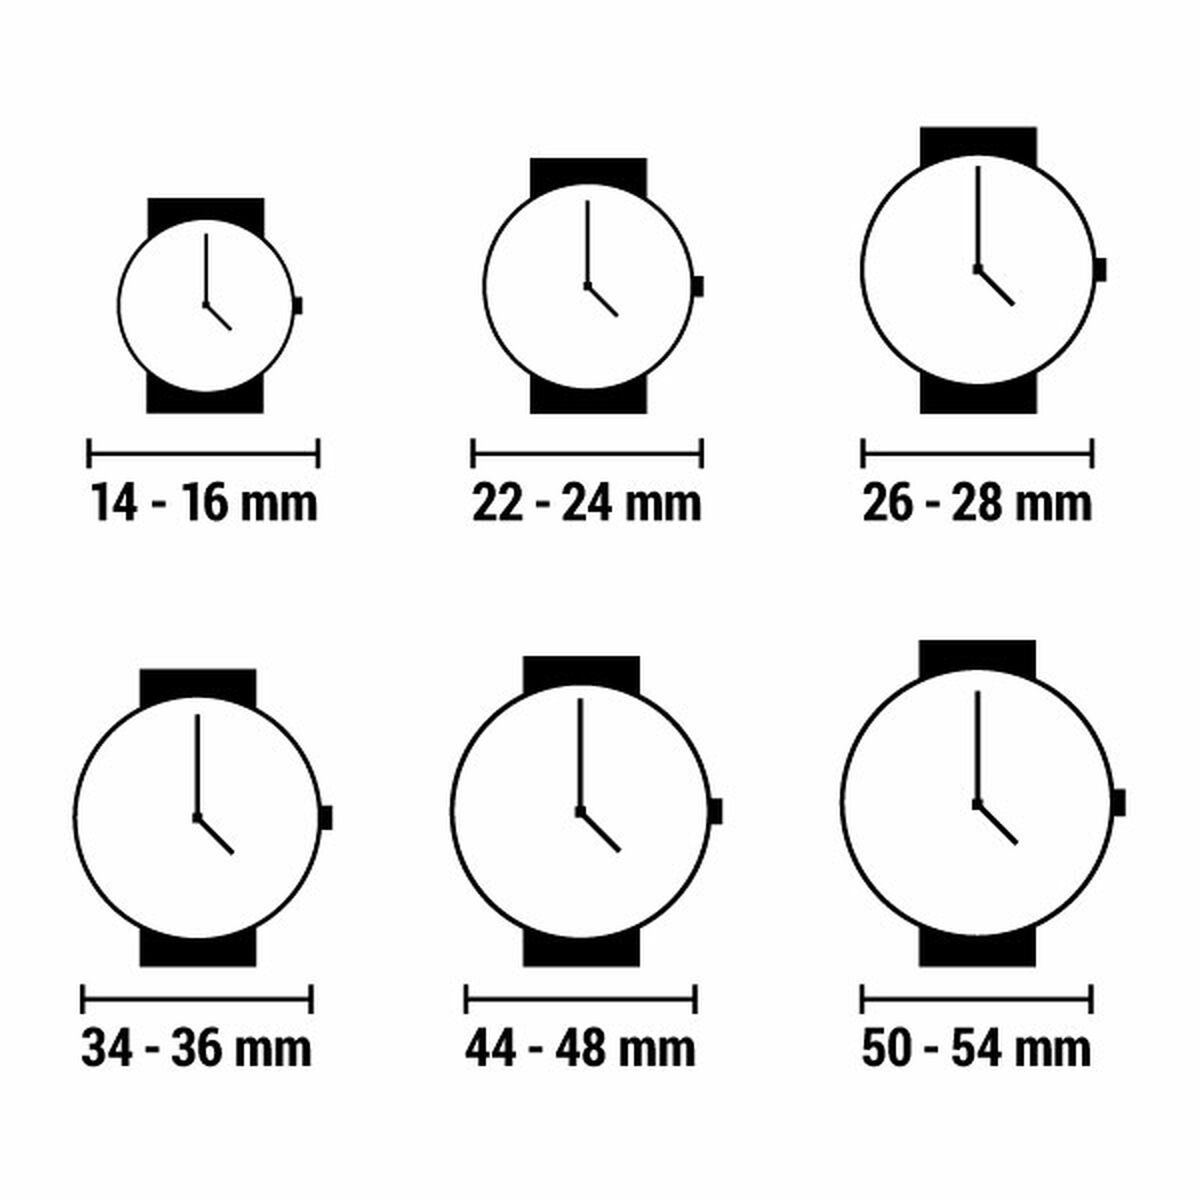 Horloge Dames Guess GW0620L4 (Ø 40 mm)